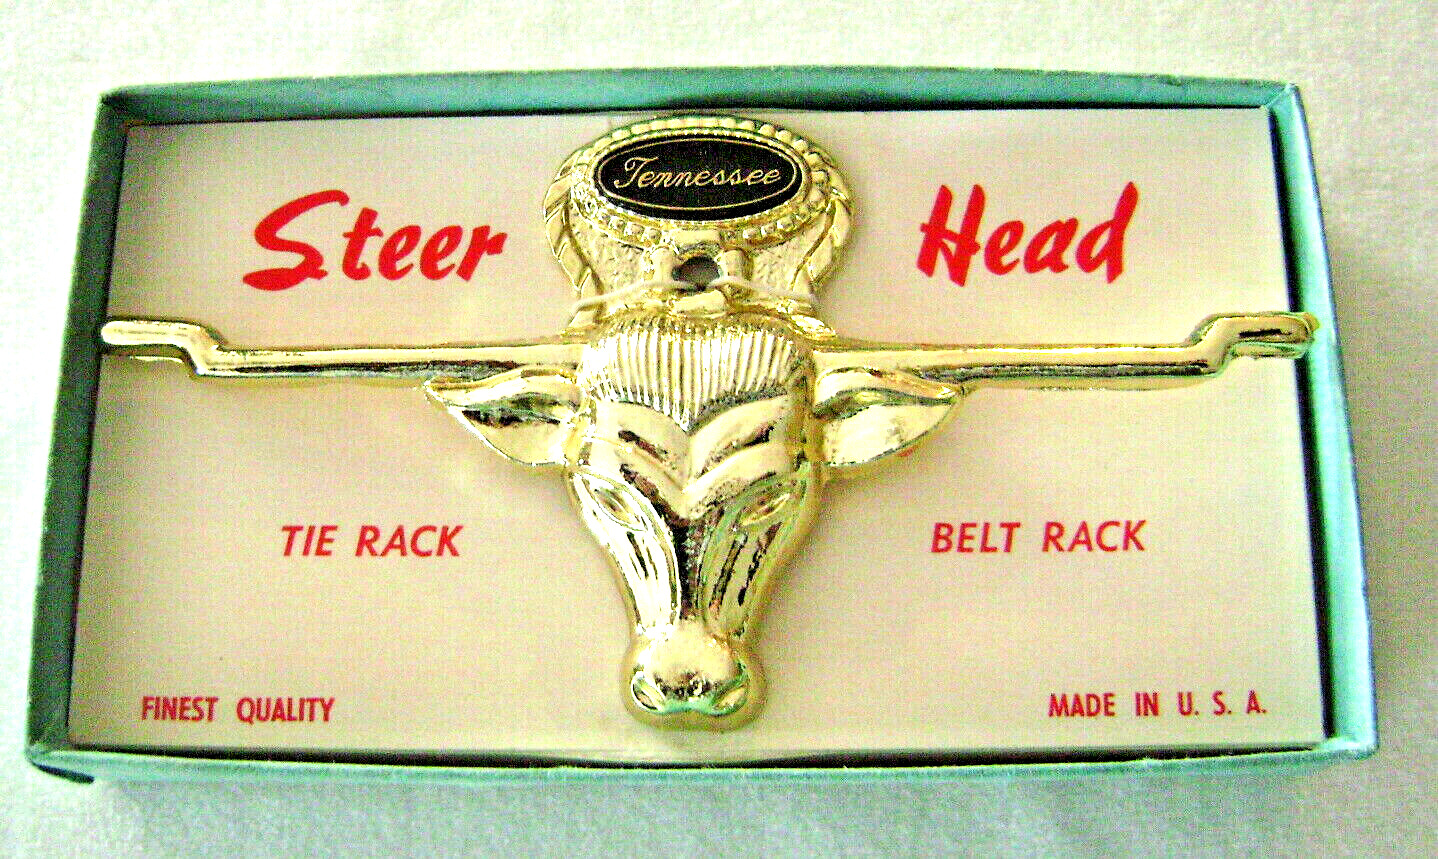 Vintage Steer Head Tie Rack / Belt Rack Tennessee Souvenir New in Box